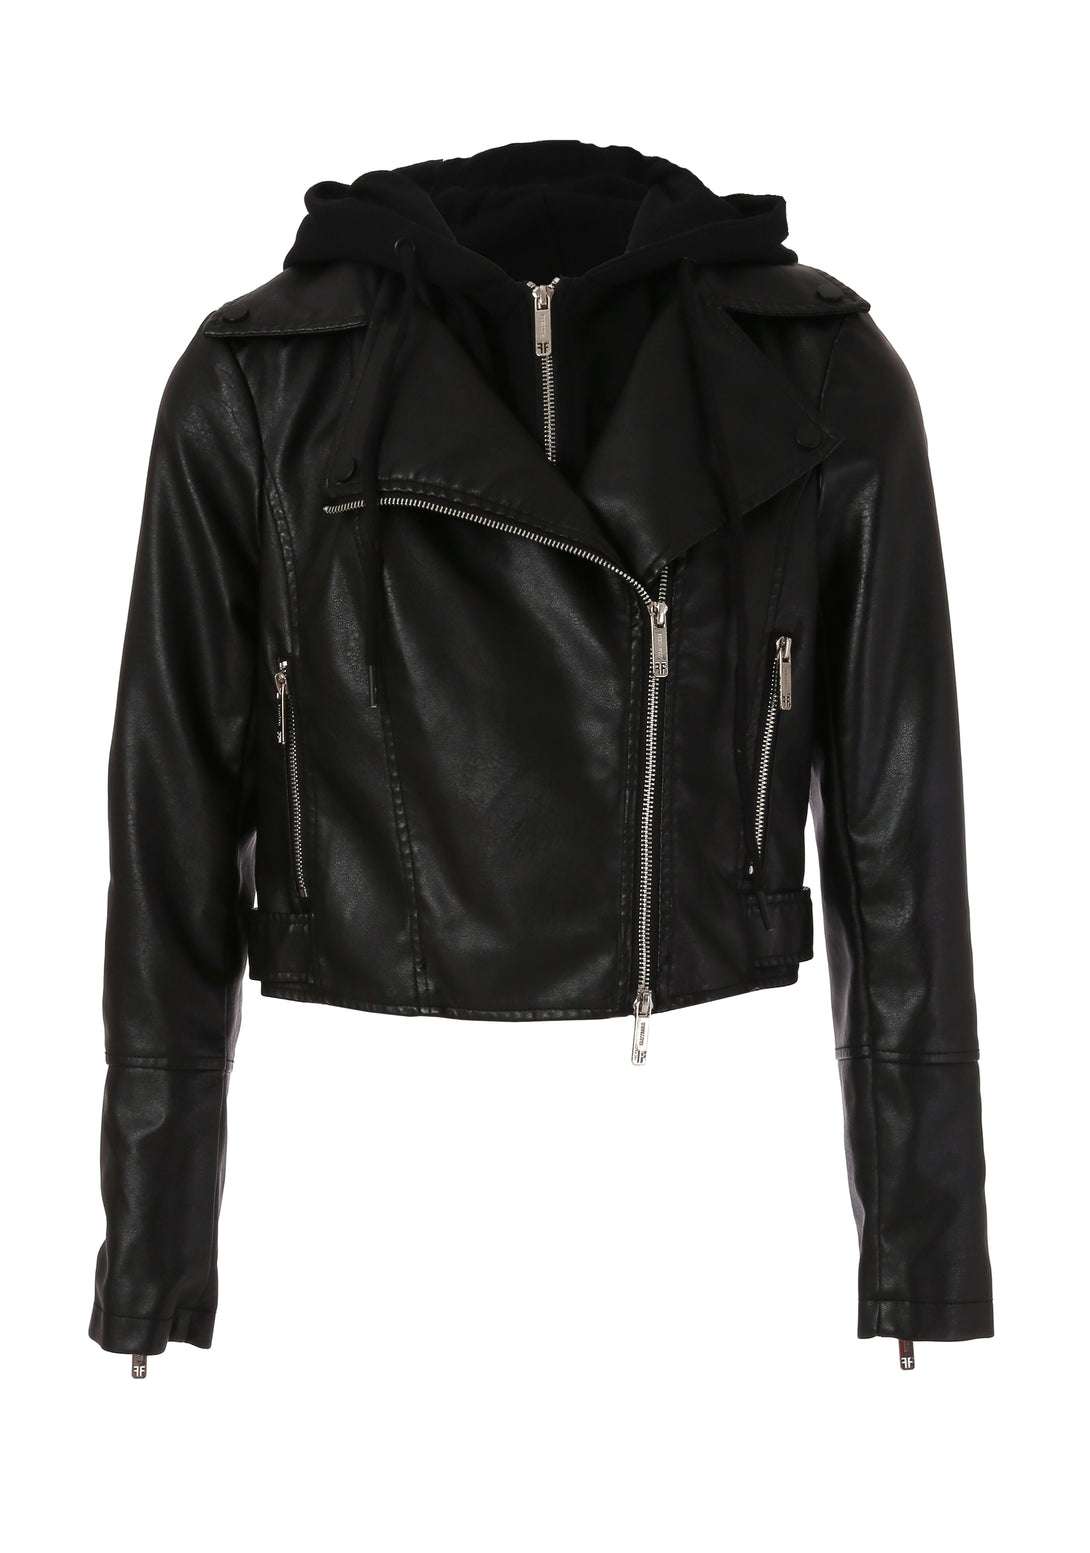 Biker jacket regular fit made in fake leather